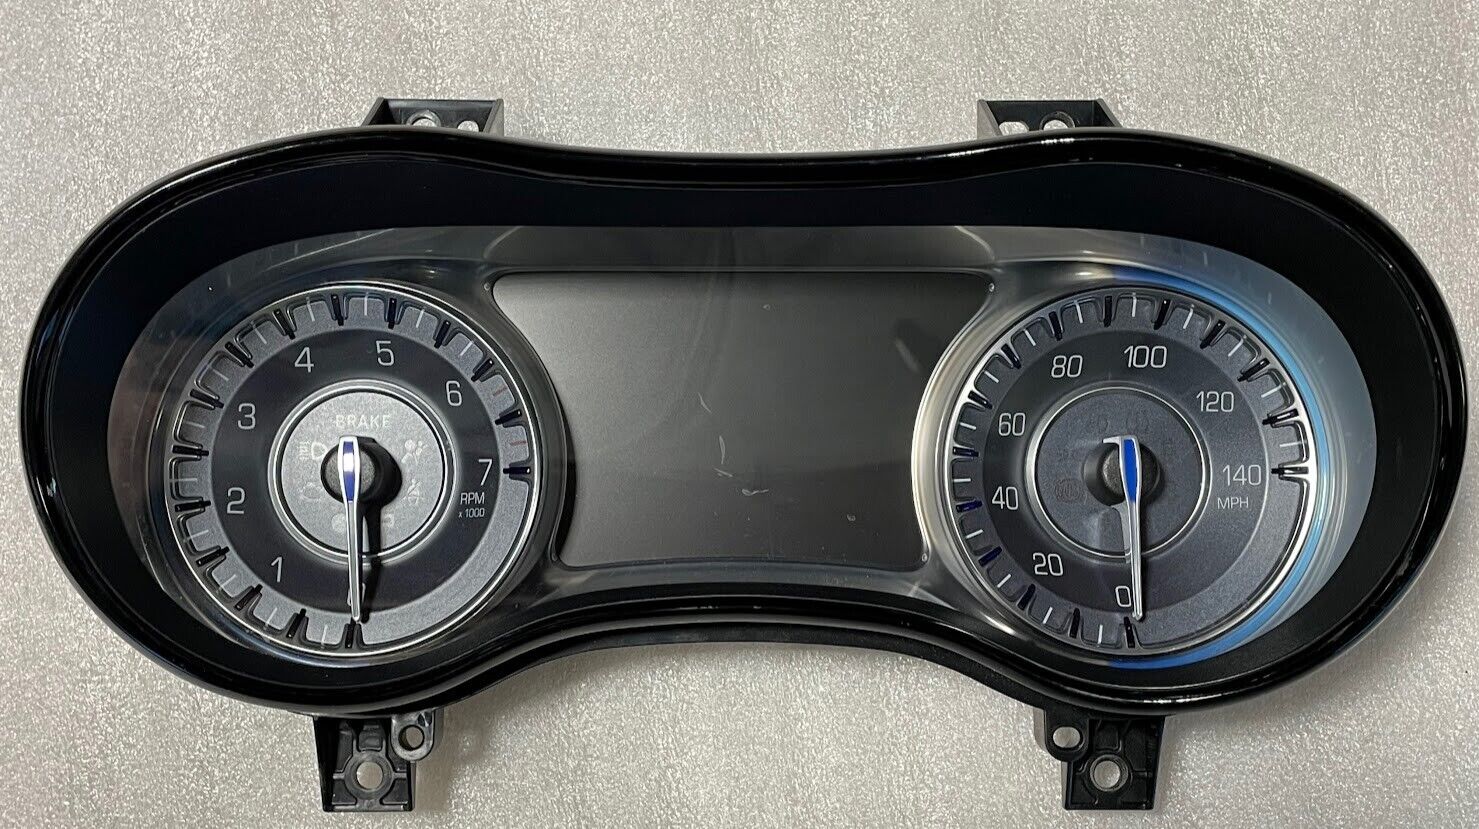 Chrysler 300 2015 instrument gauge cluster